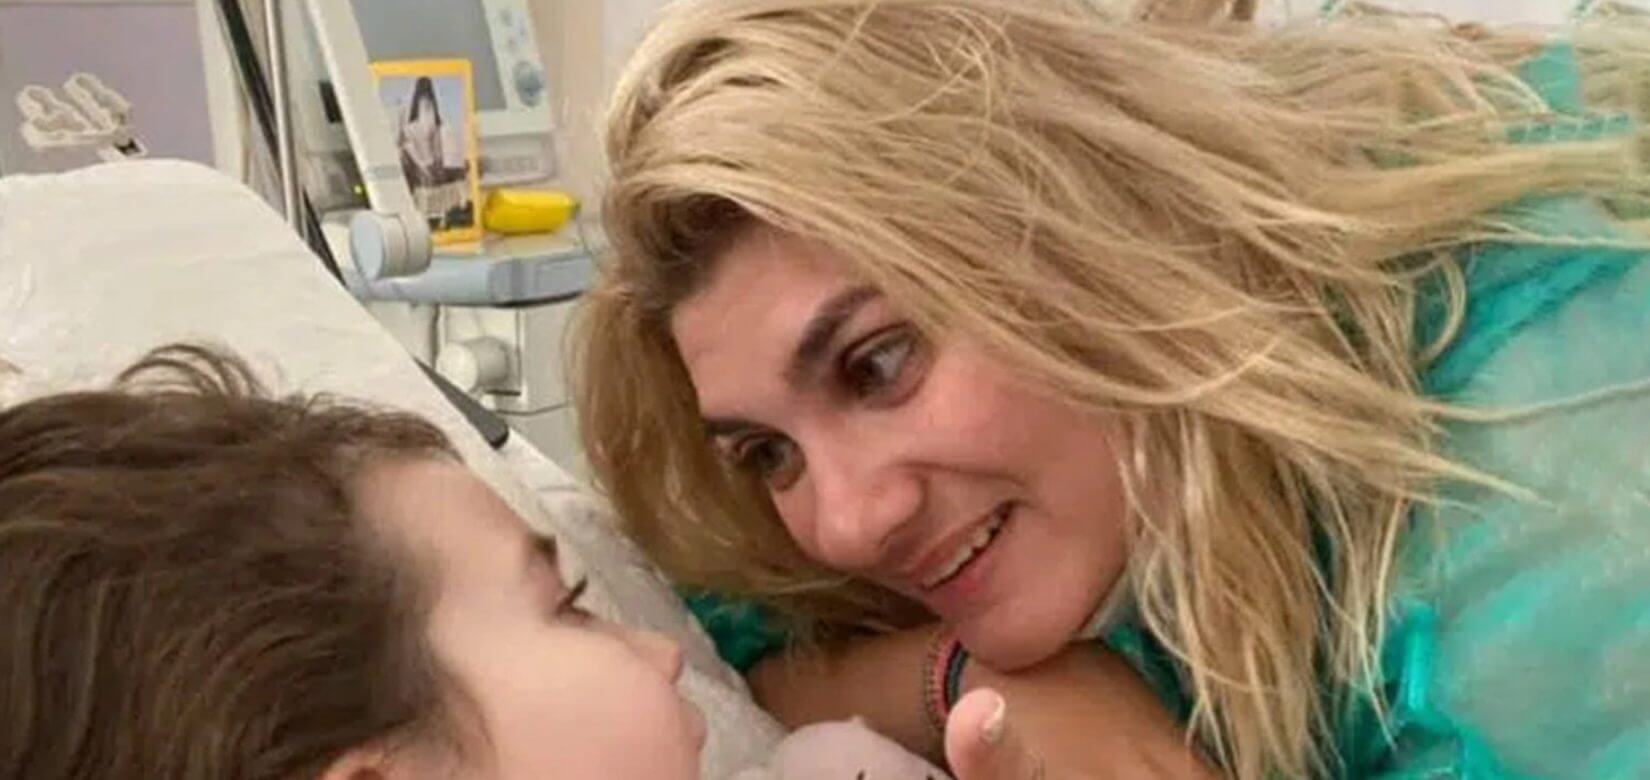 Επιμένει η Πισπιρίγκου ότι χορηγήθηκε κεταμίνη στην Τζωρτζίνα δύο φορές στο νοσοκομείο του Ρίου